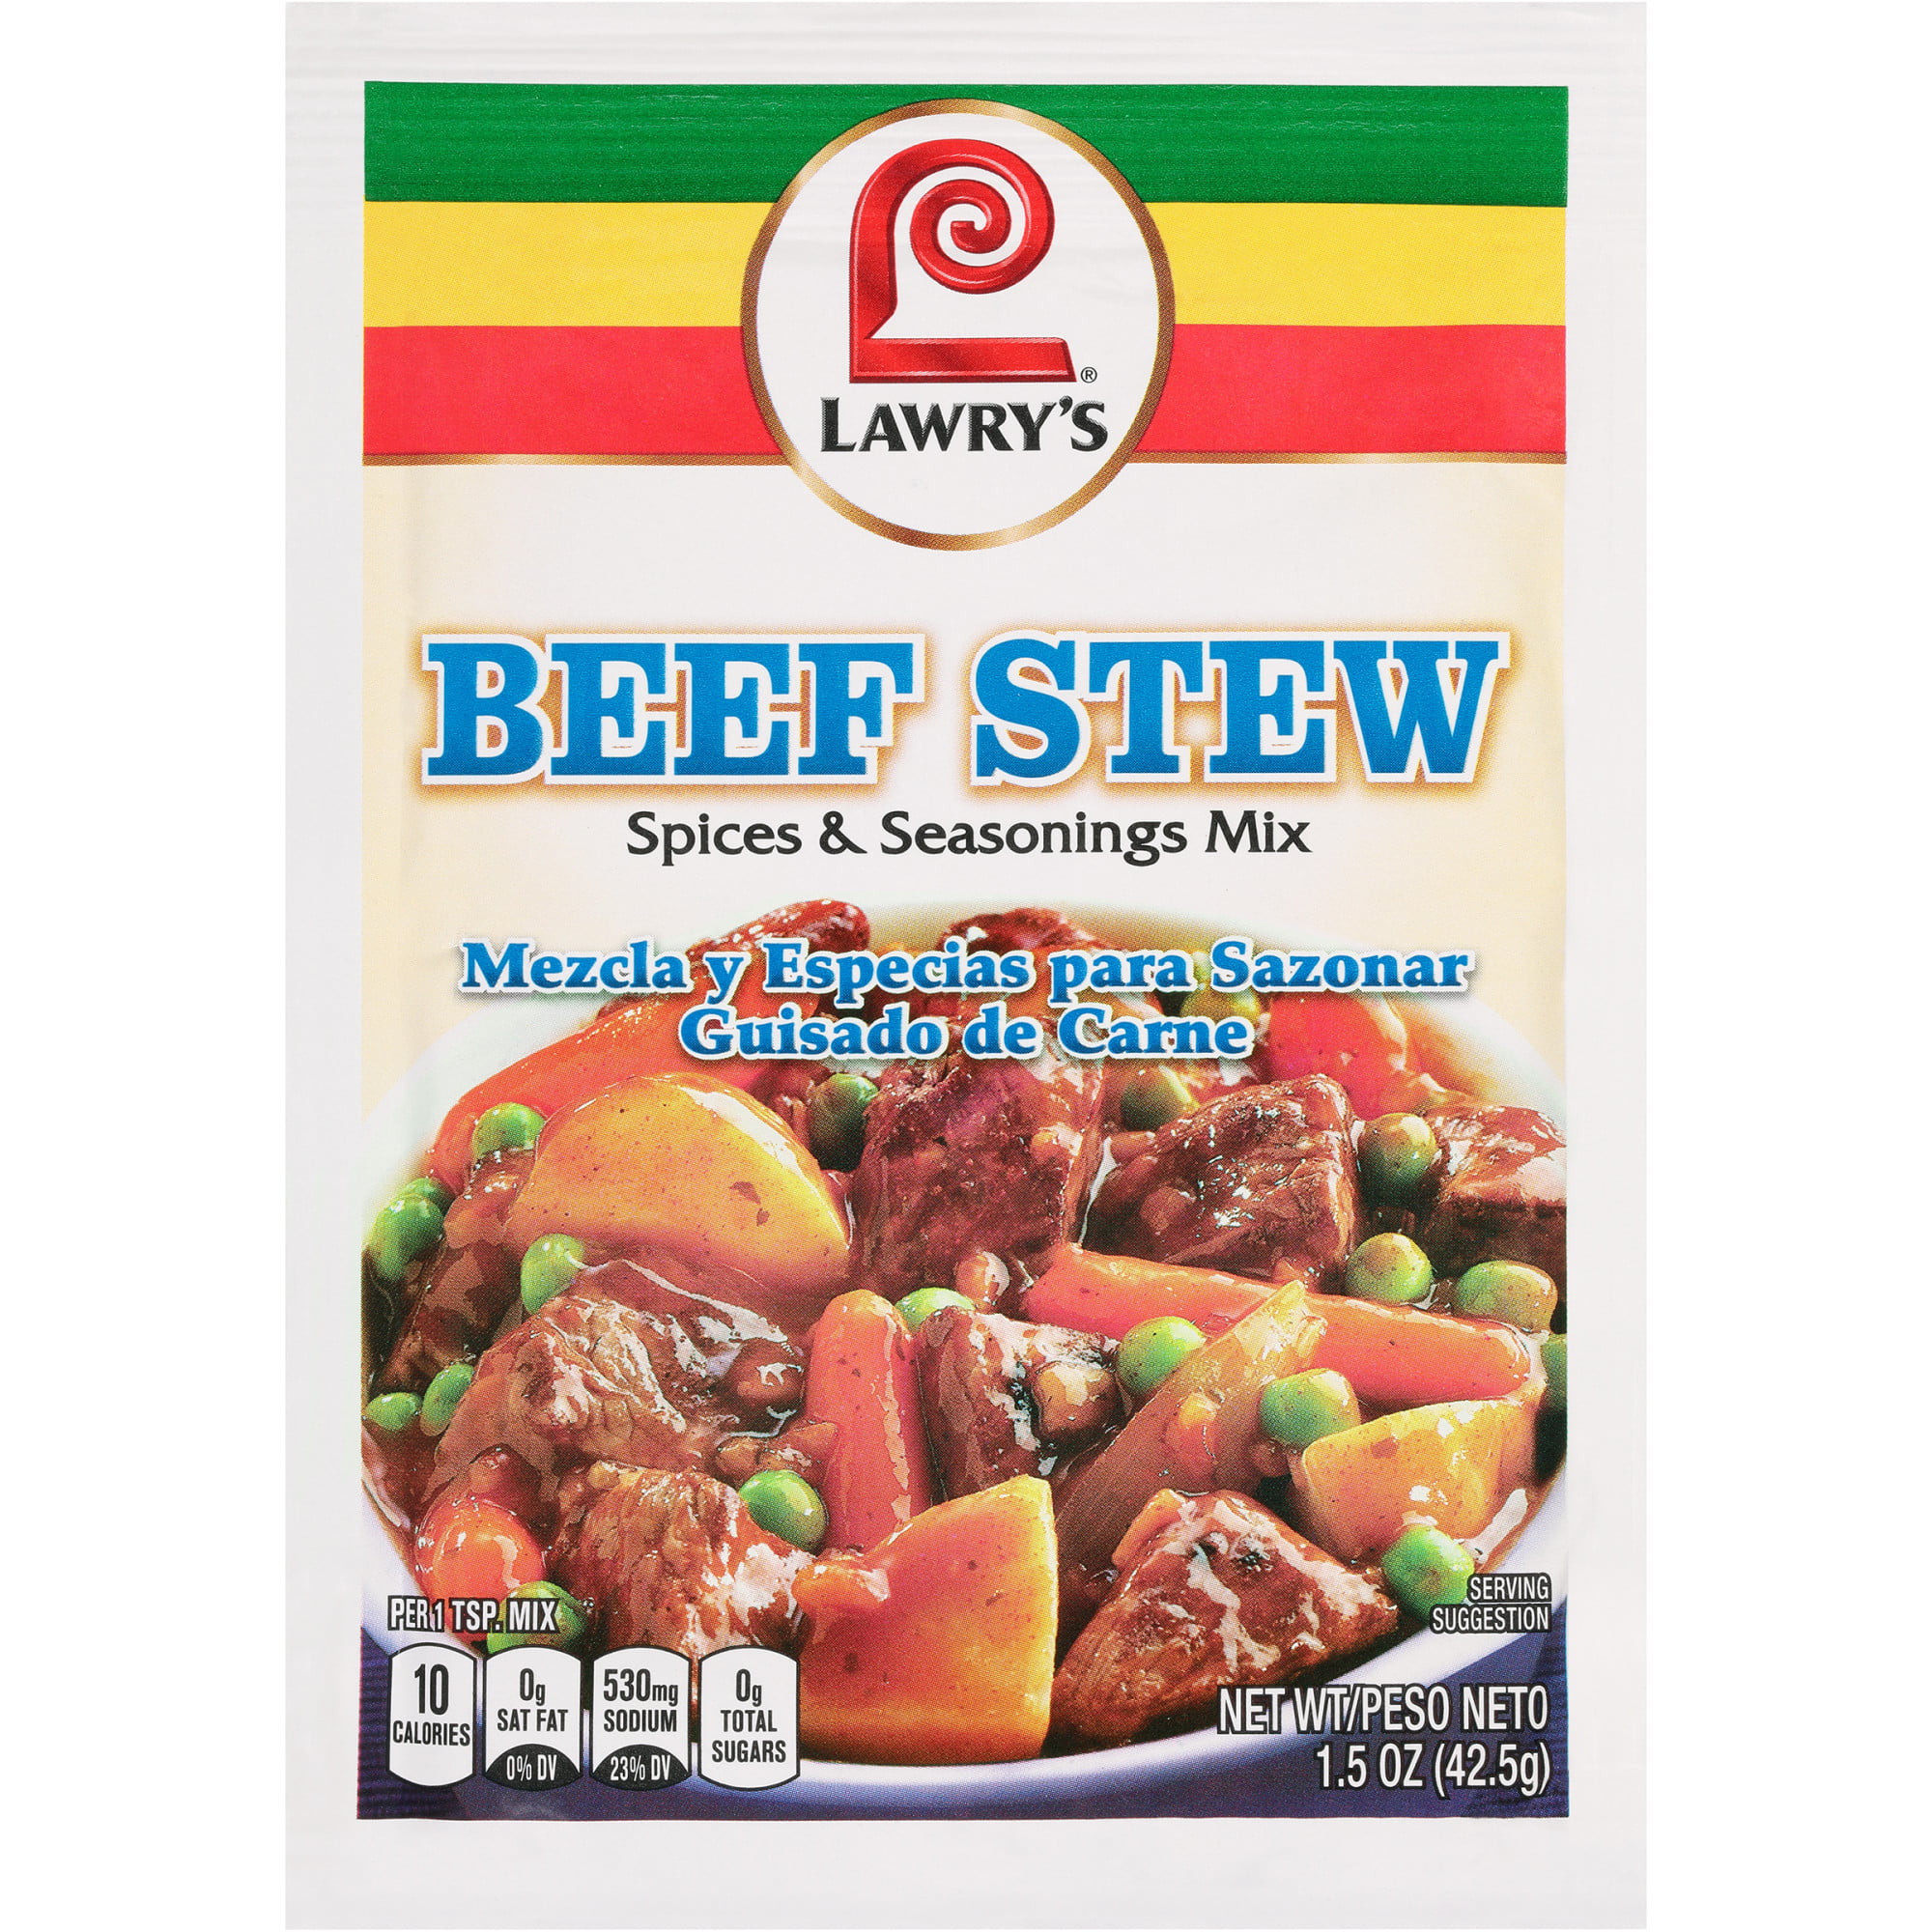 Og beef stew